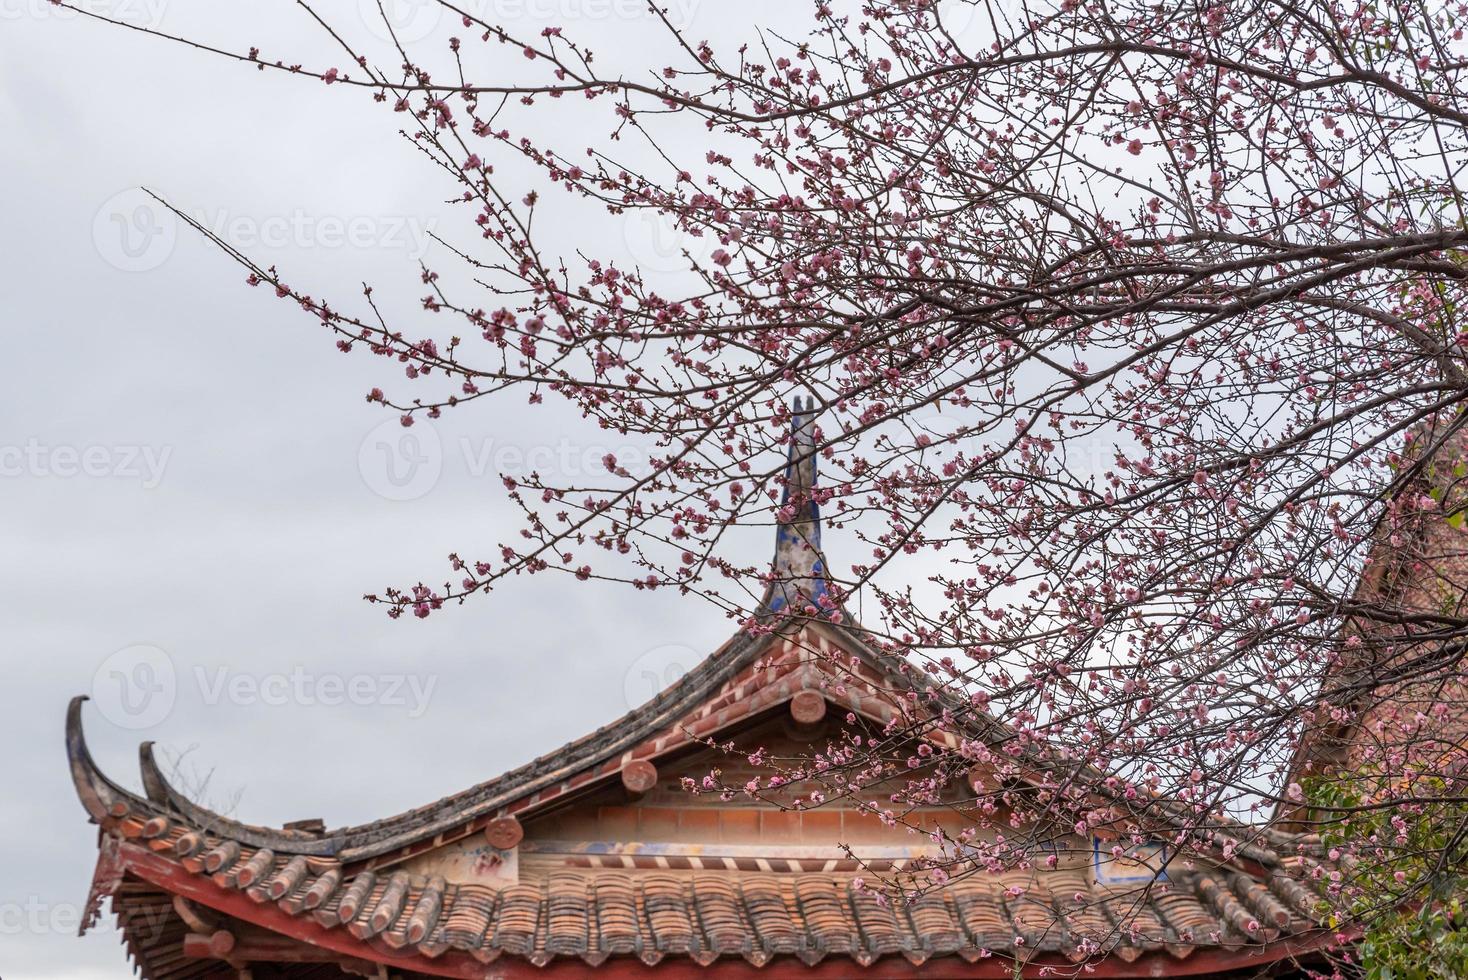 de rosa plommonblommorna i buddhistiska tempel är öppna foto